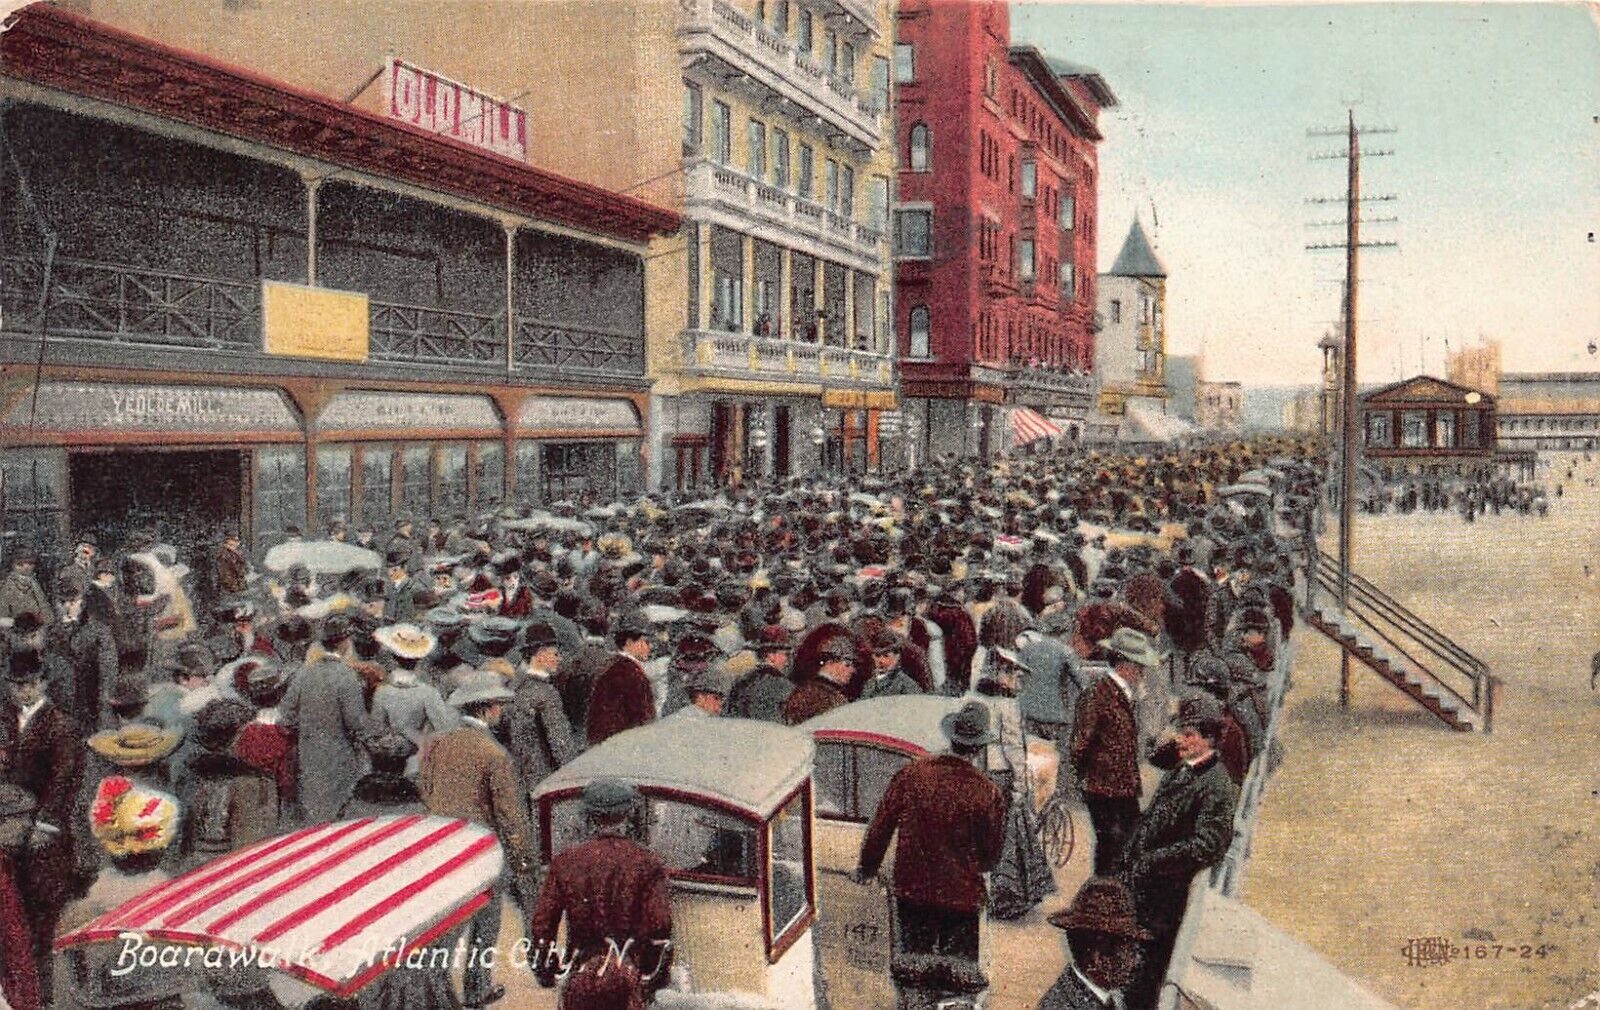 Boardwalk, Atlantic City, New Jersey, early postcard, used in 1908